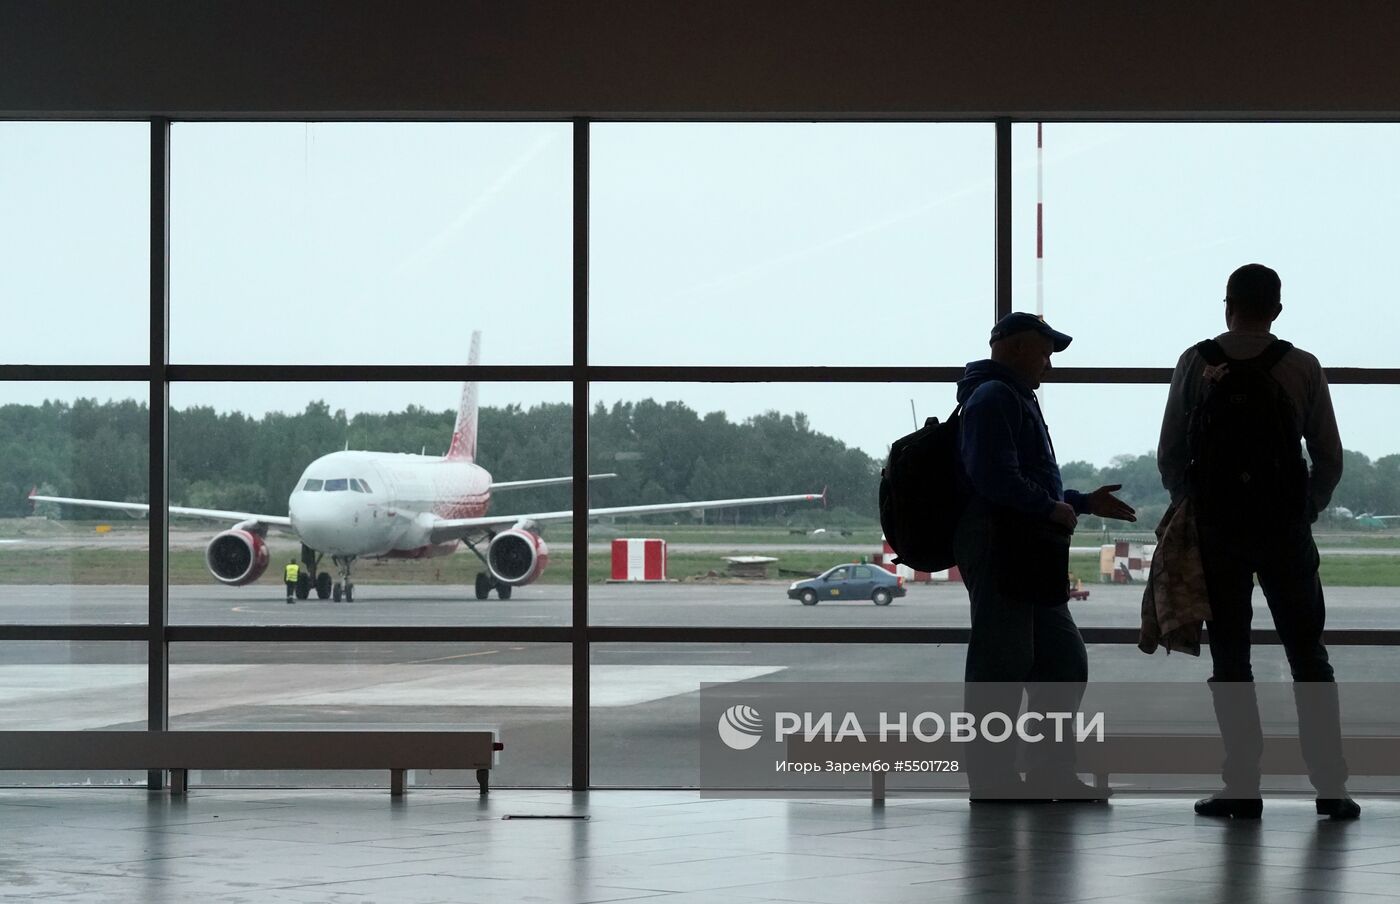 Новый аэровокзальный комплекс международного аэропорта Храброво